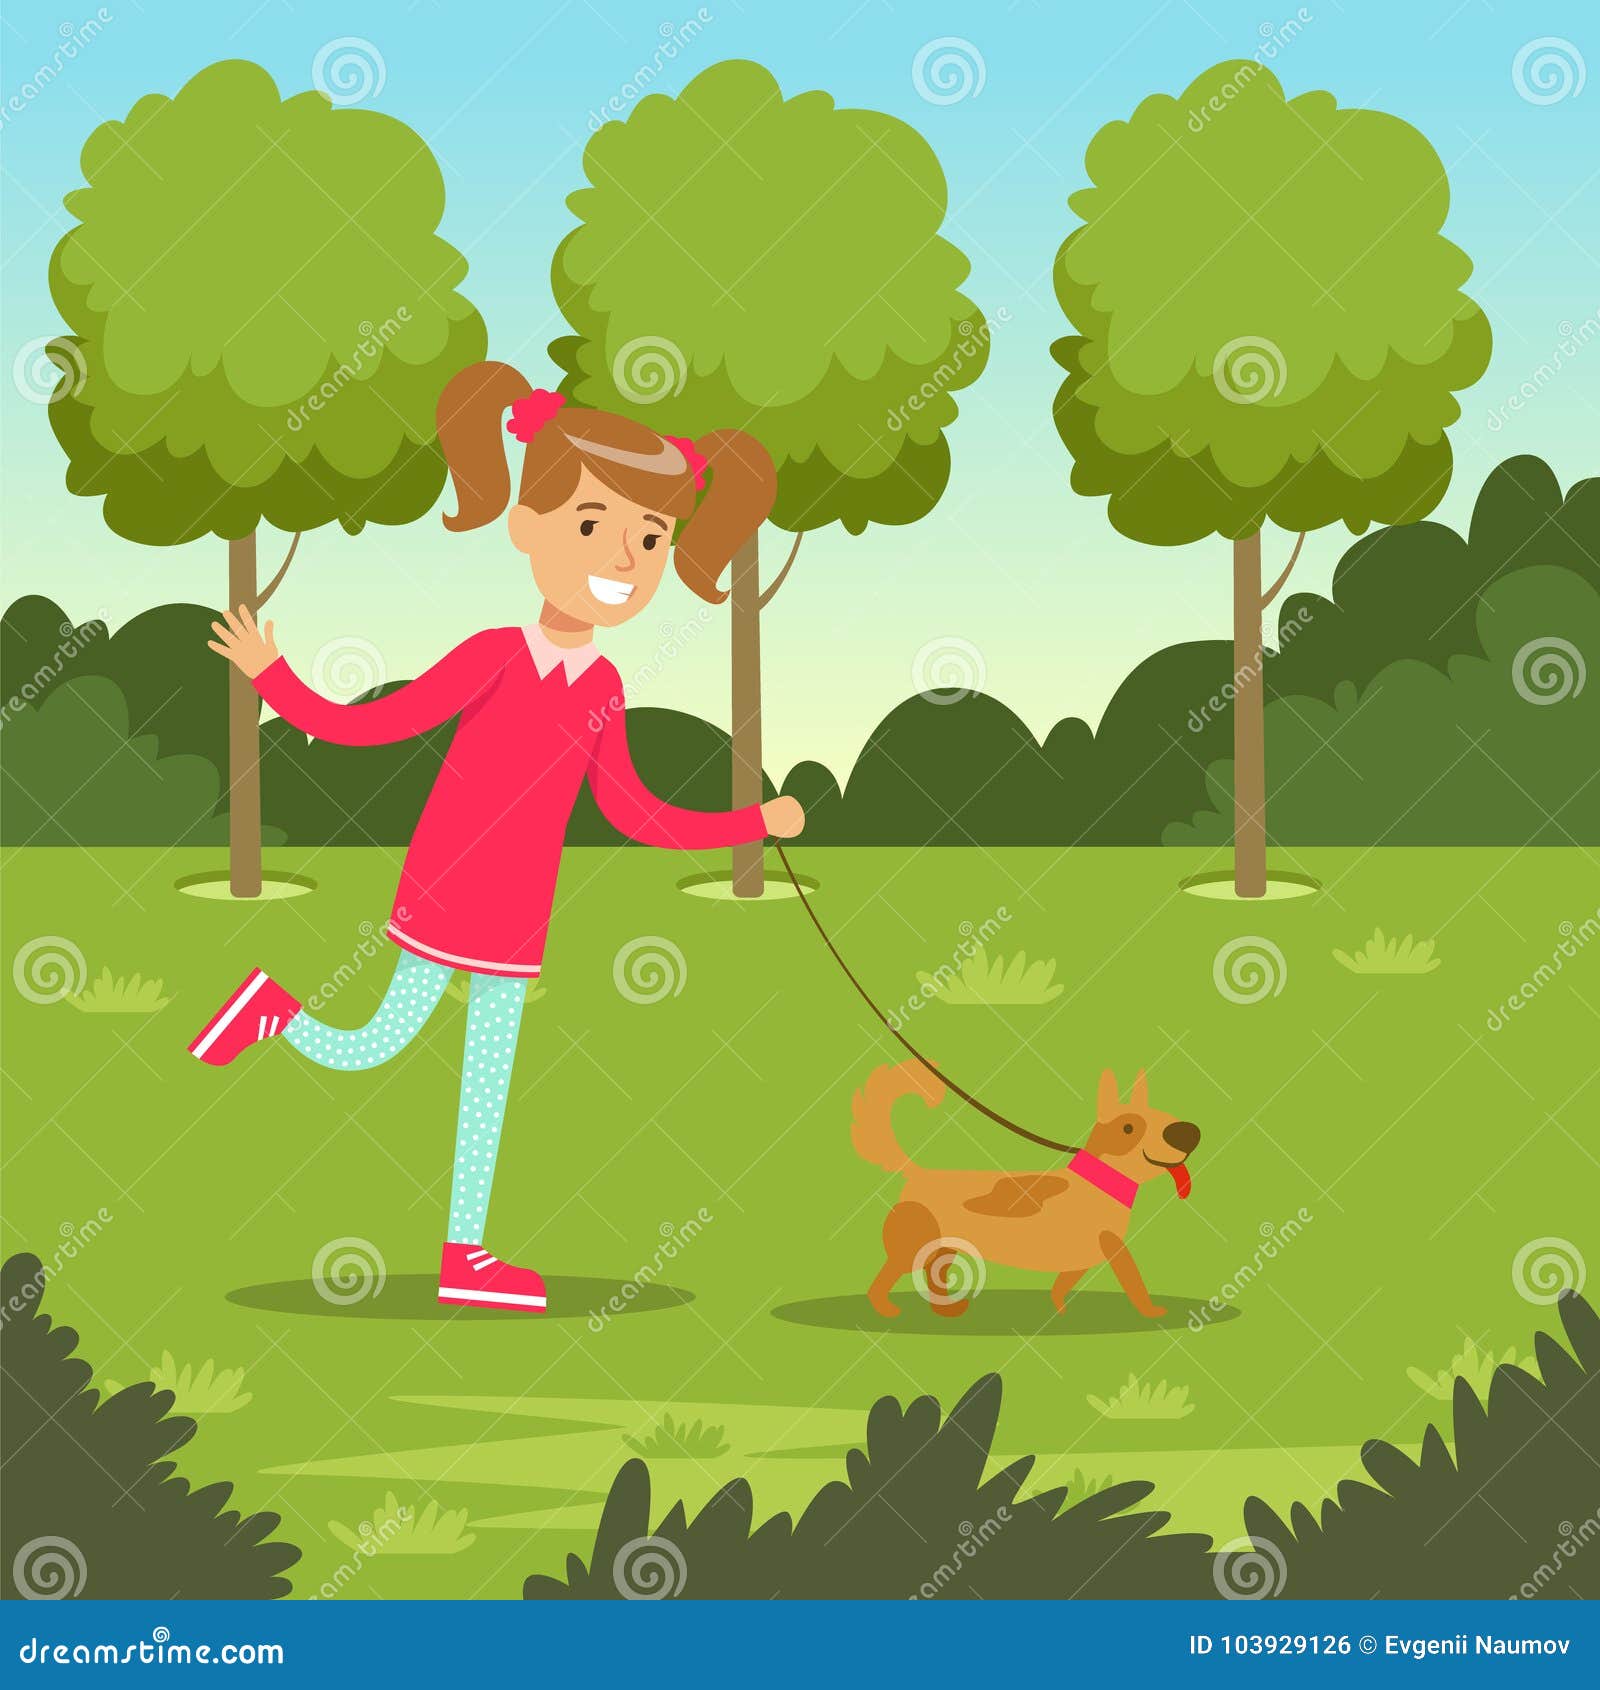 The dog likes the park. Рисунок парка для прогулок. Гулять с собакой мультяшный. Мальчик гуляет в парке. Прогулка с собакой иллюстрация.